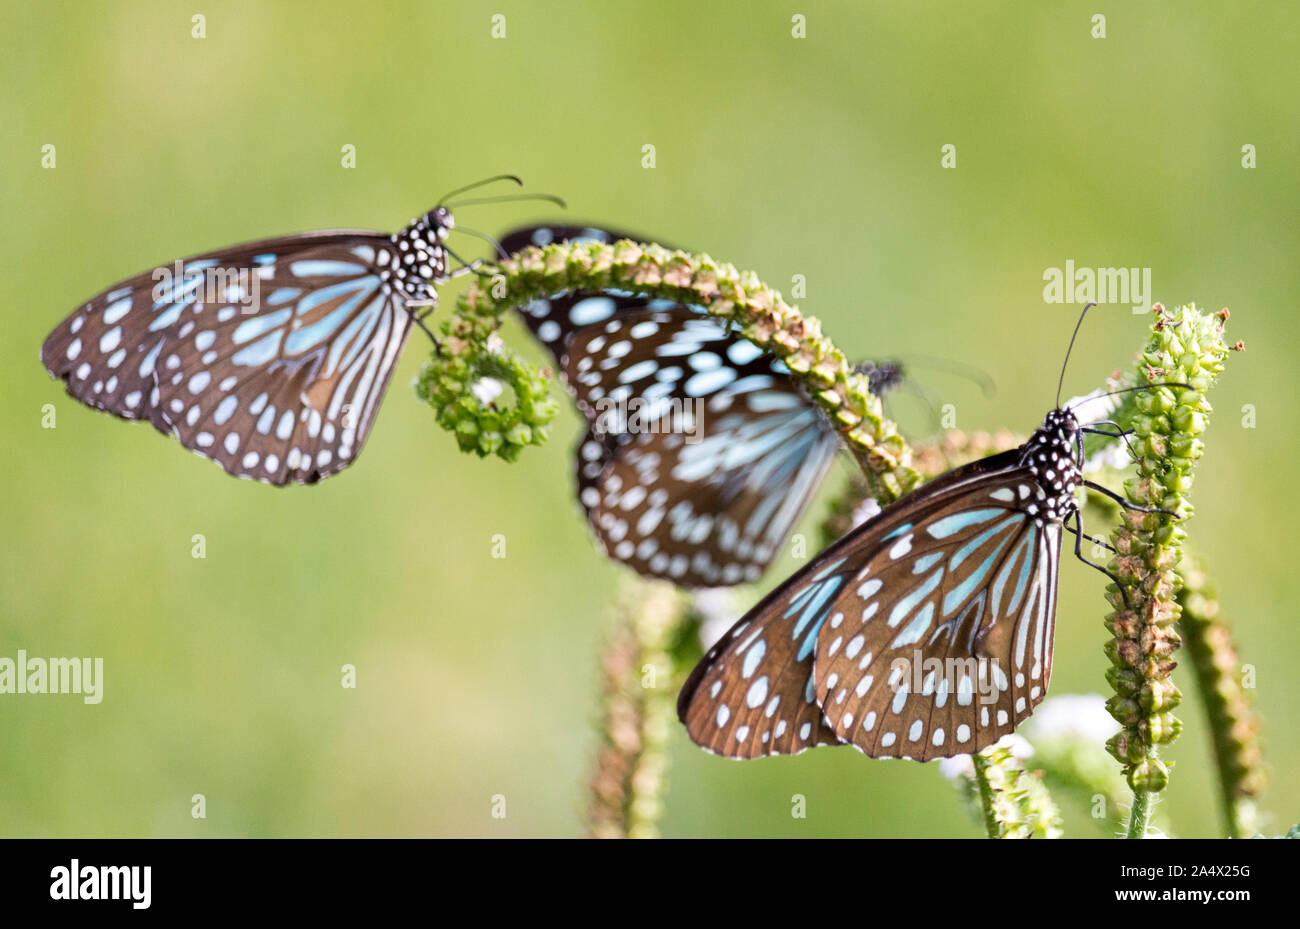 Drei blaue Schmetterlinge Fütterung auf eine grüne Pflanze im grünen Gras Feld um einen leeren See in Südindien - Tiruvannamalai 2019 Stockfoto